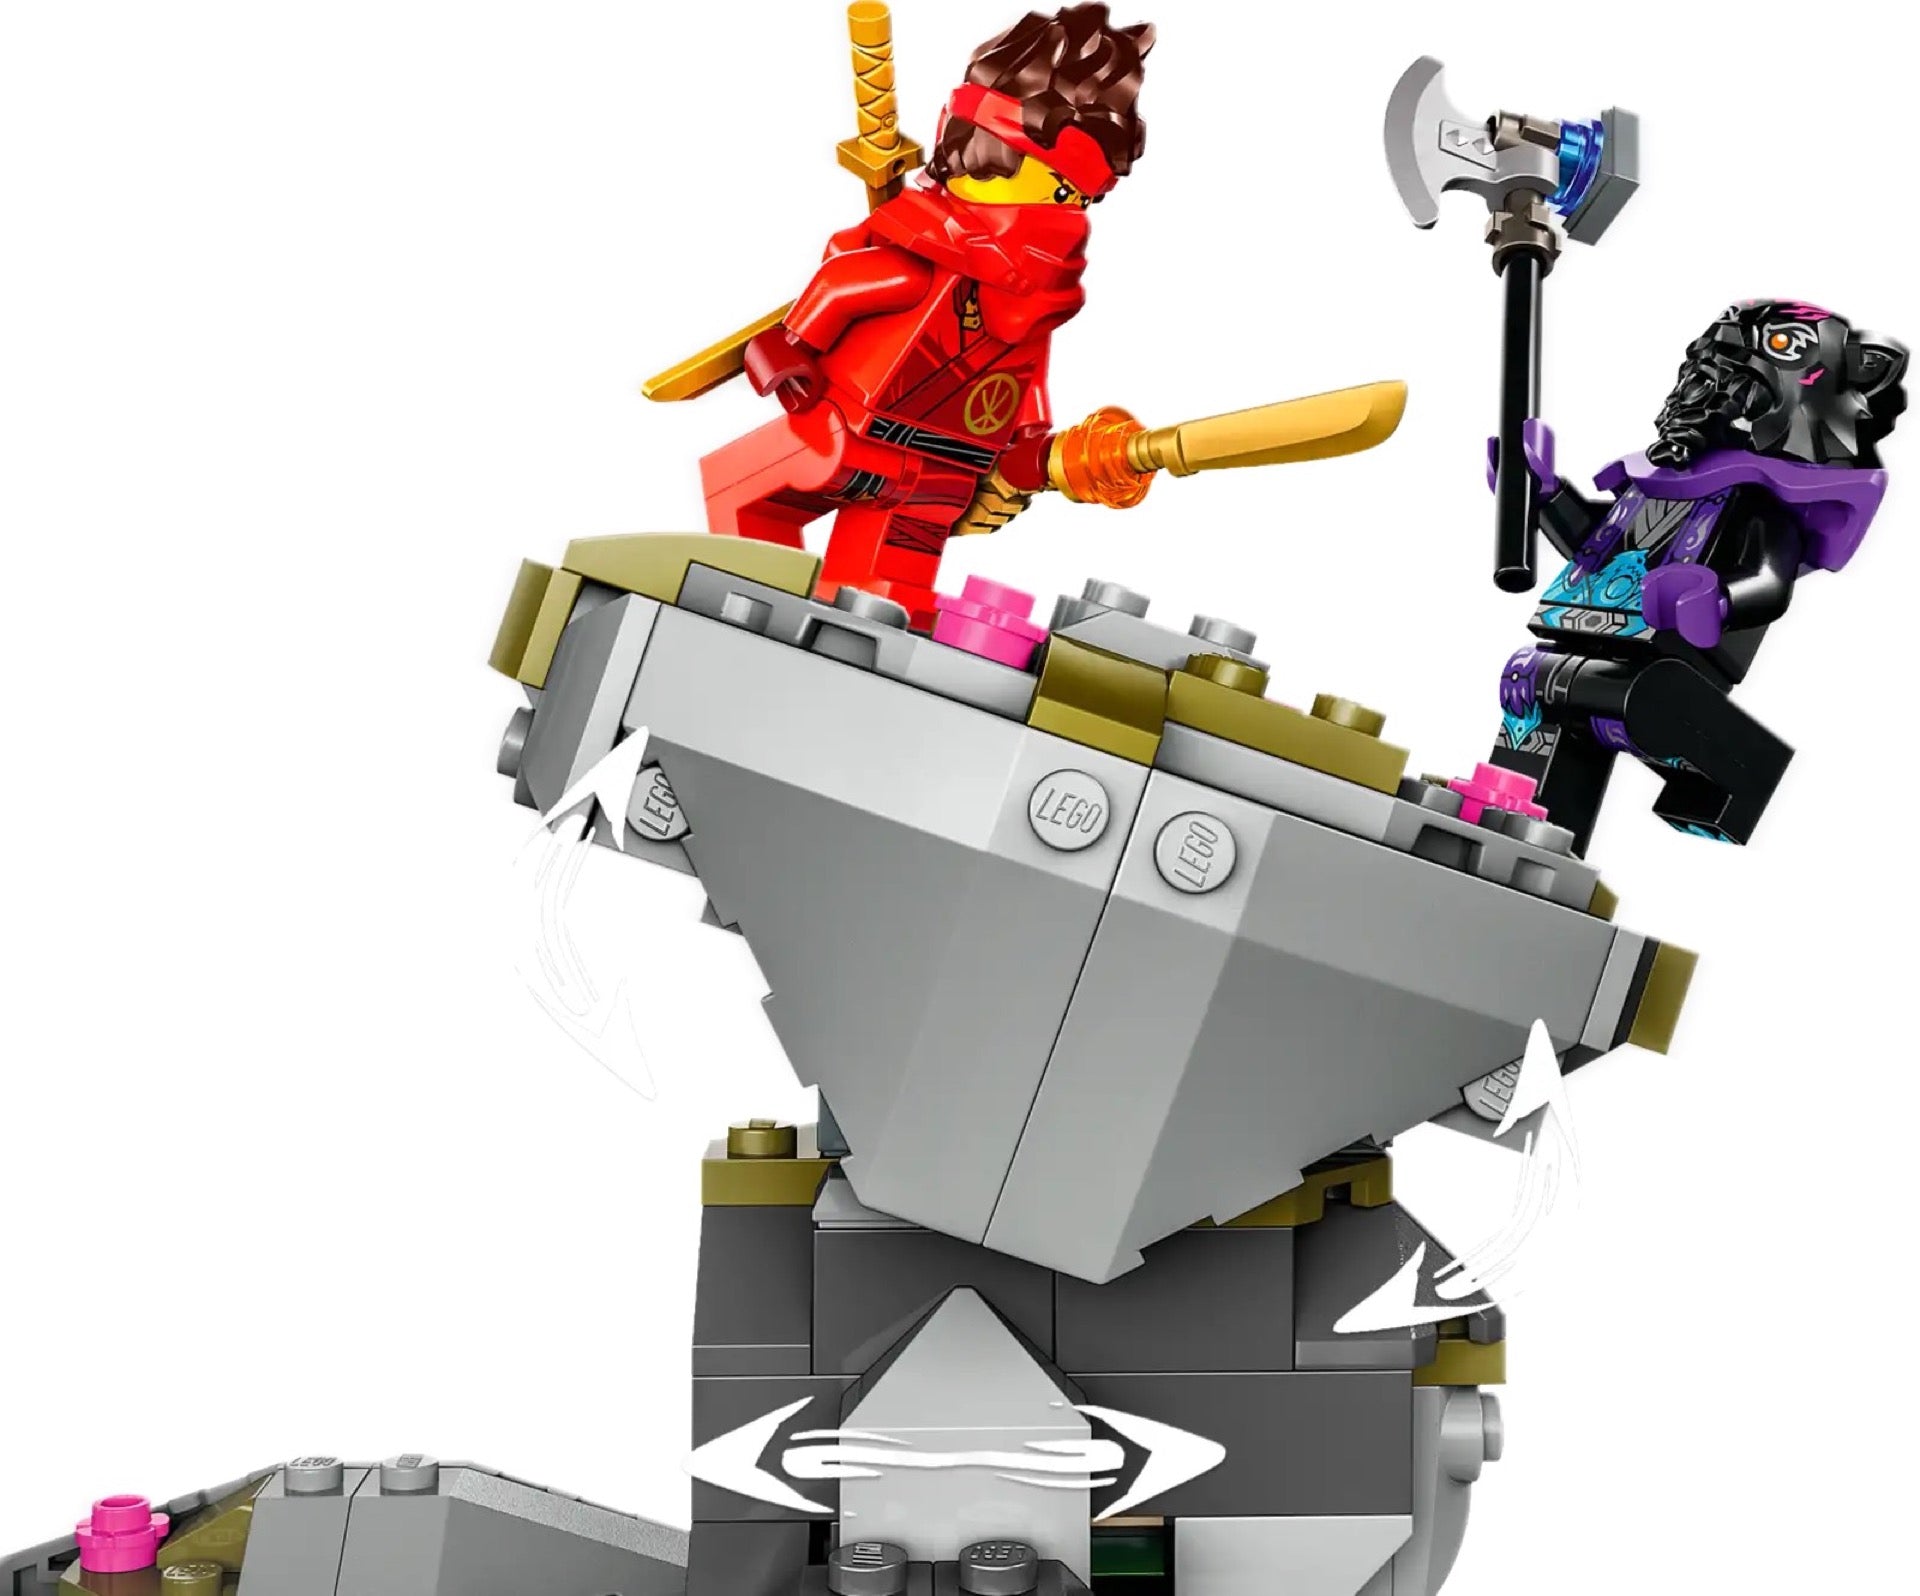 71819 LEGO Ninjago Santuario della pietra del drago